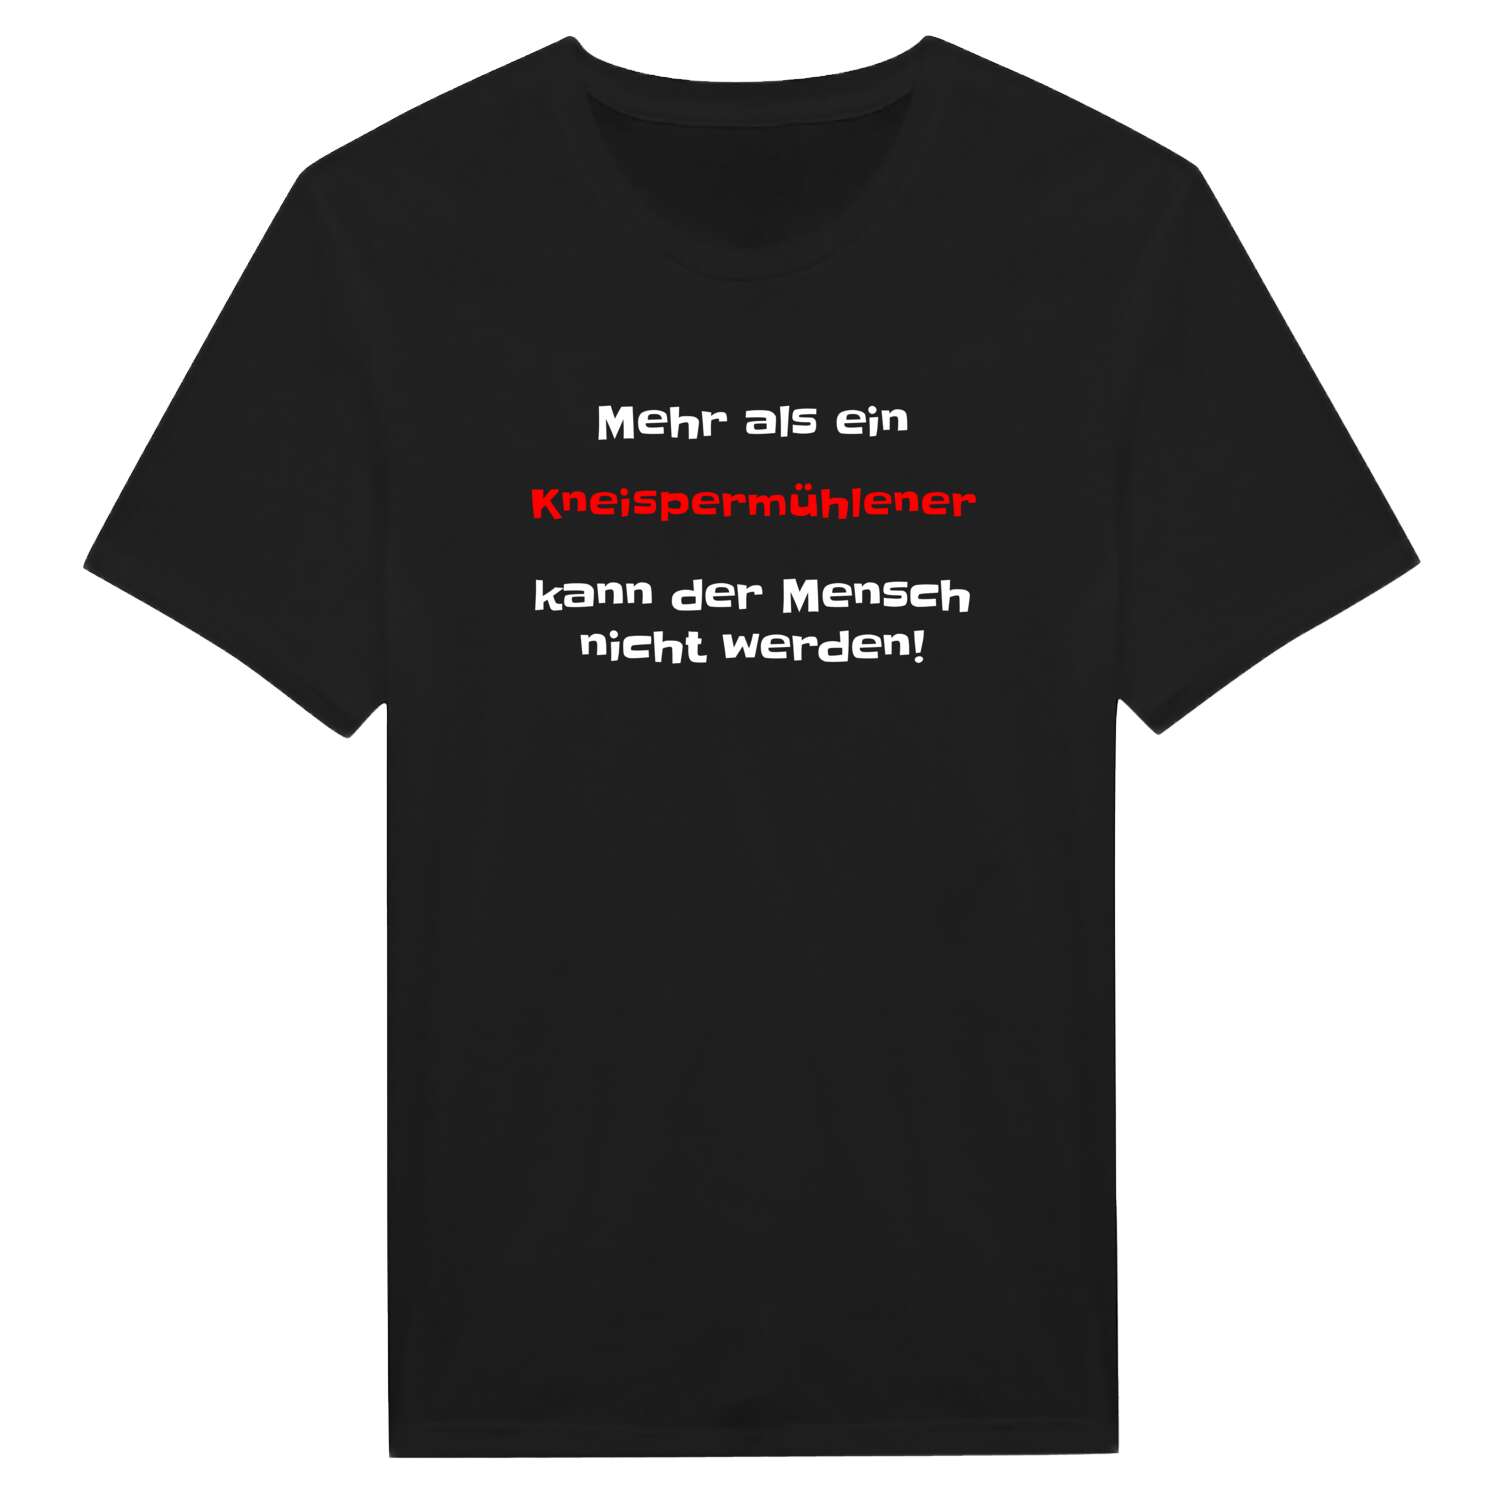 Kneispermühle T-Shirt »Mehr als ein«